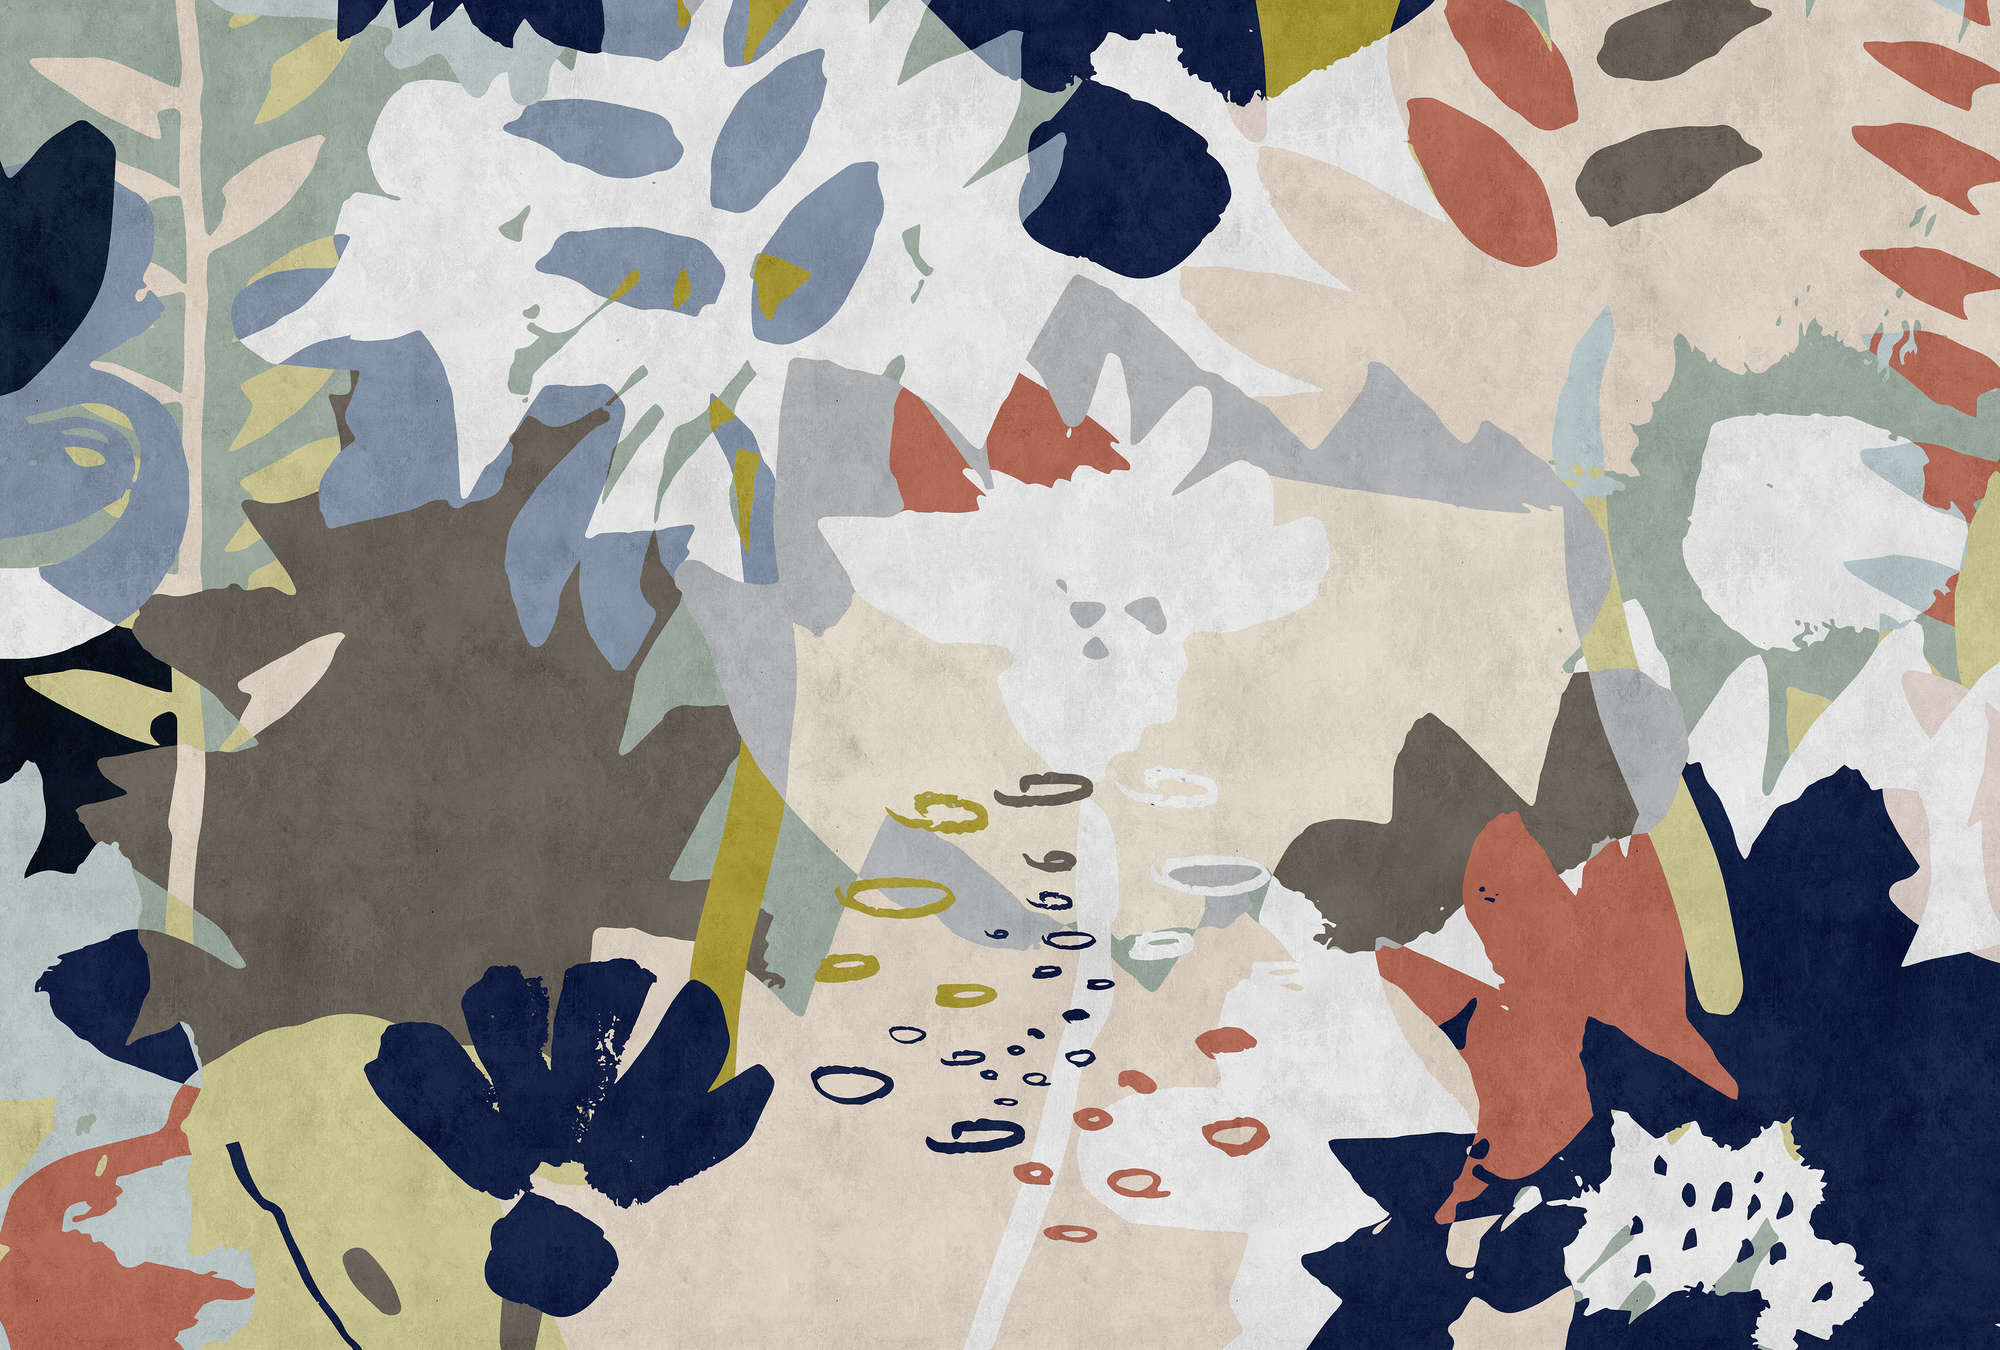             Floral Collage 4 - Fotomurali con motivo a foglie colorate - Natura qualita consistenza in carta assorbente - Blu, Marrone | Pile liscio premium
        